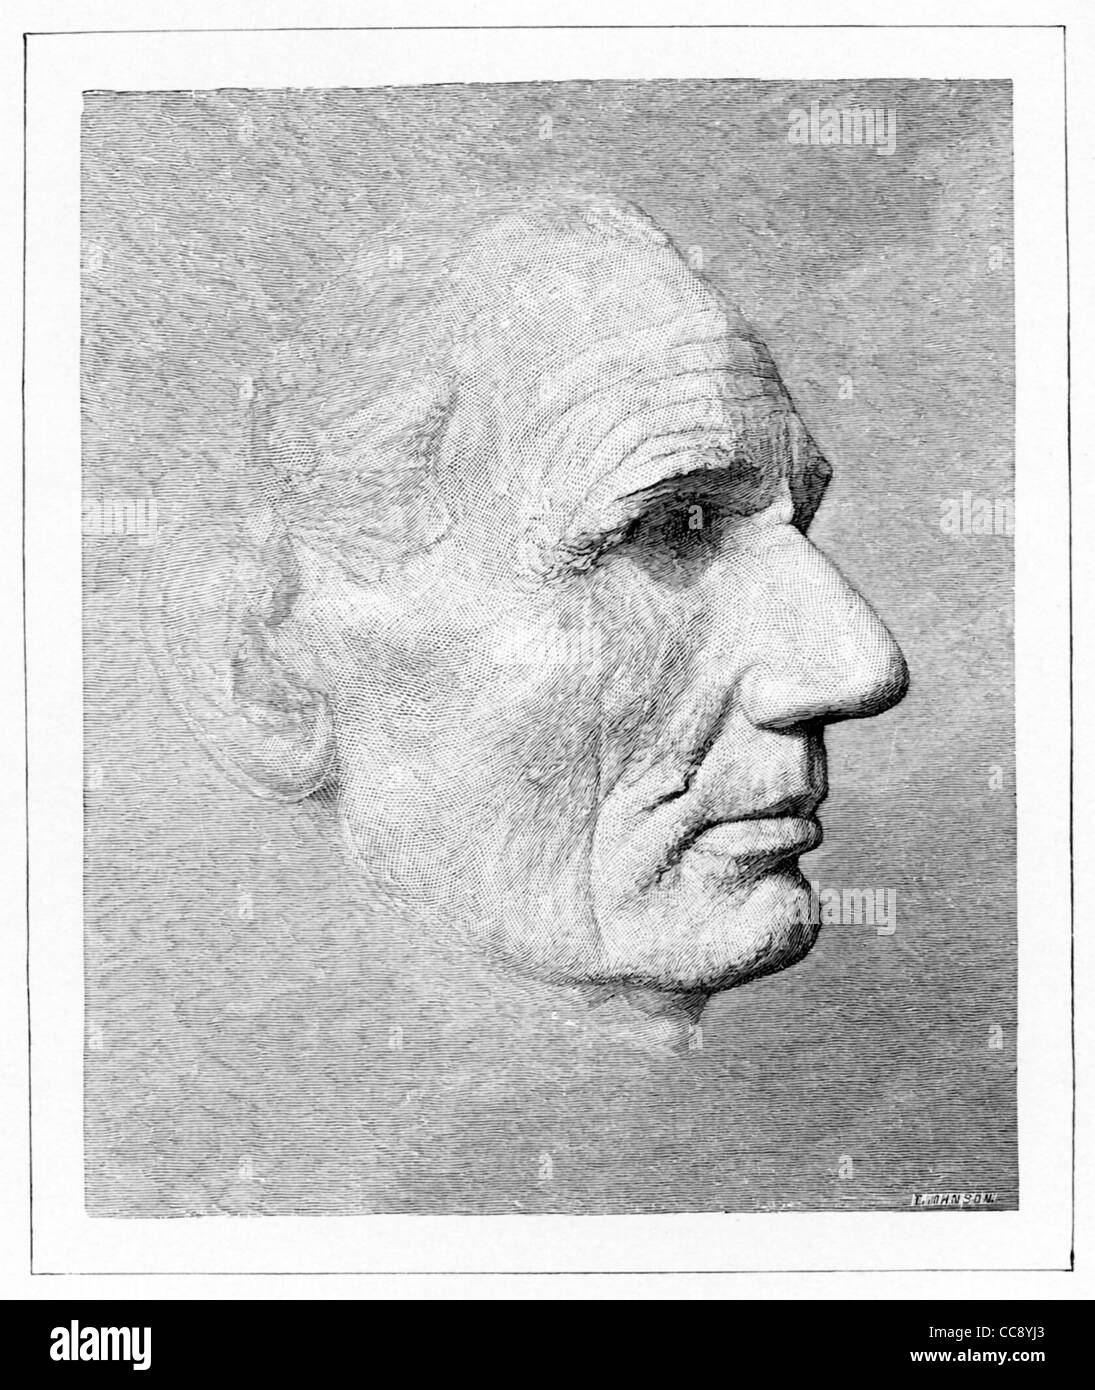 Diese Maske Leben von Abraham Lincoln von Leonard W. Volk in Chicago, April 1860 - kurz vor Republican Convention gemacht. Stockfoto